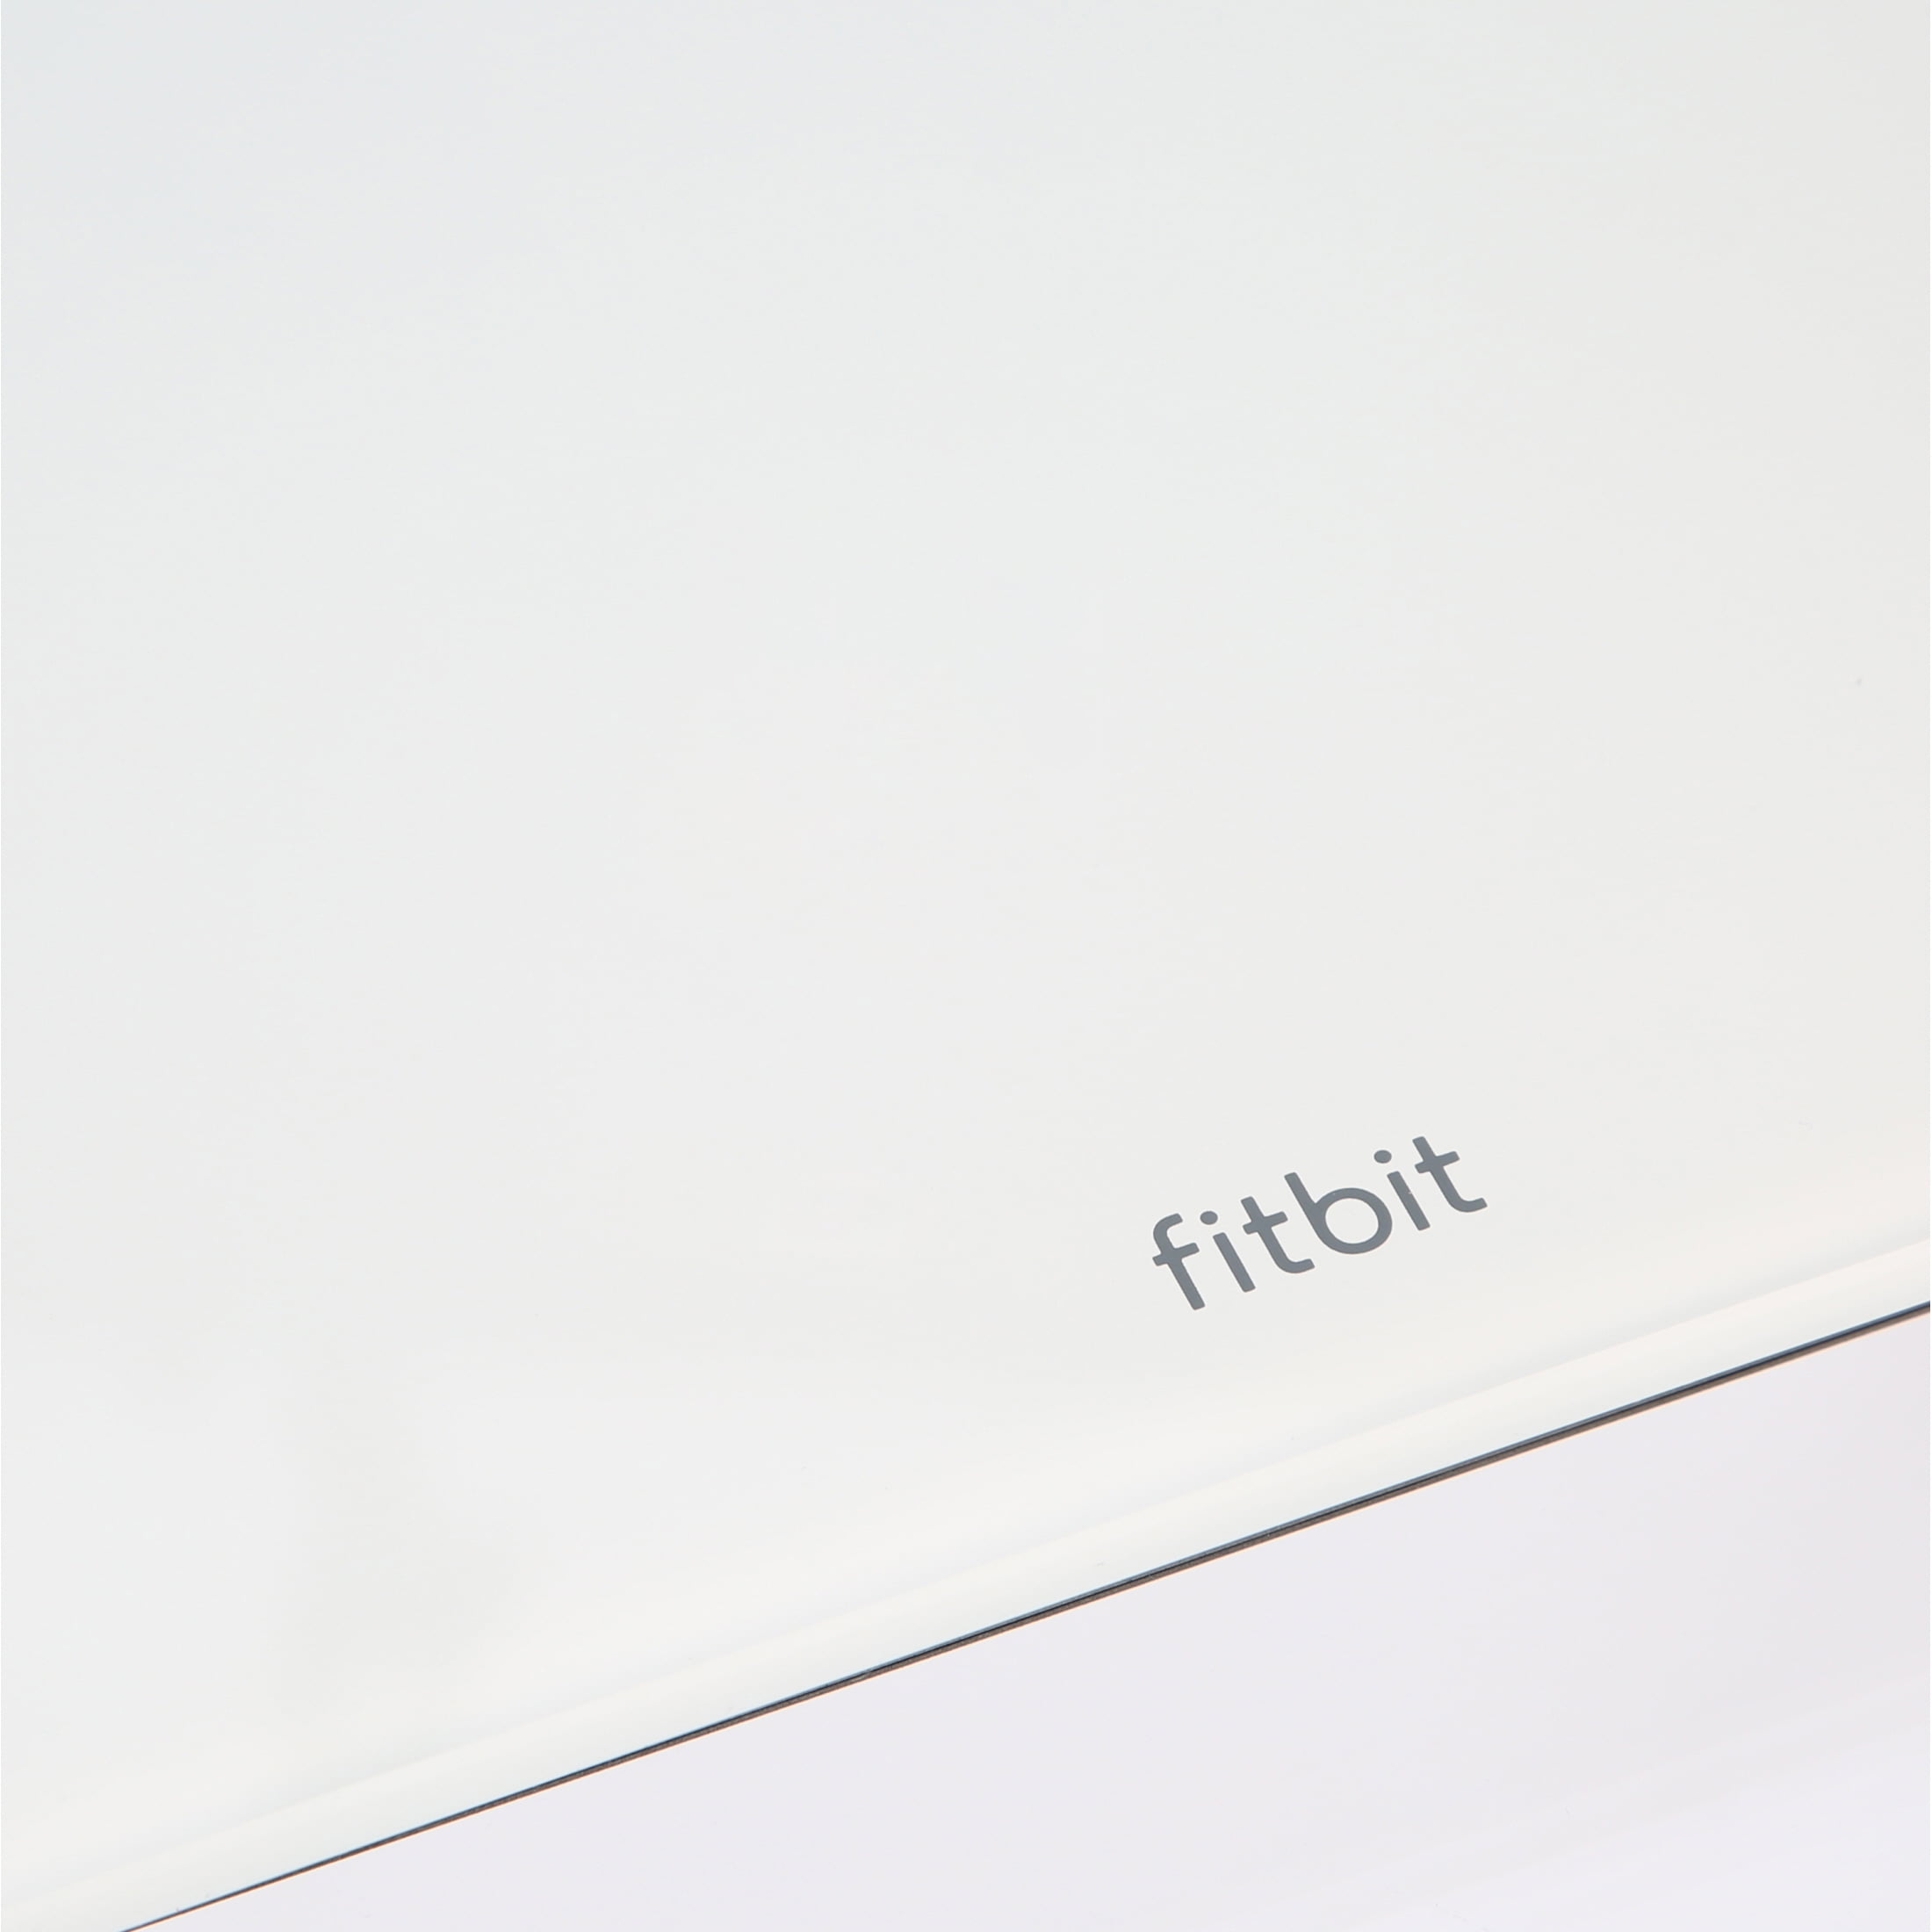 Fitbit Aria Wi-Fi Smart Digital Scale in Black or White (Refurb) $55  shipped (Orig. $130)